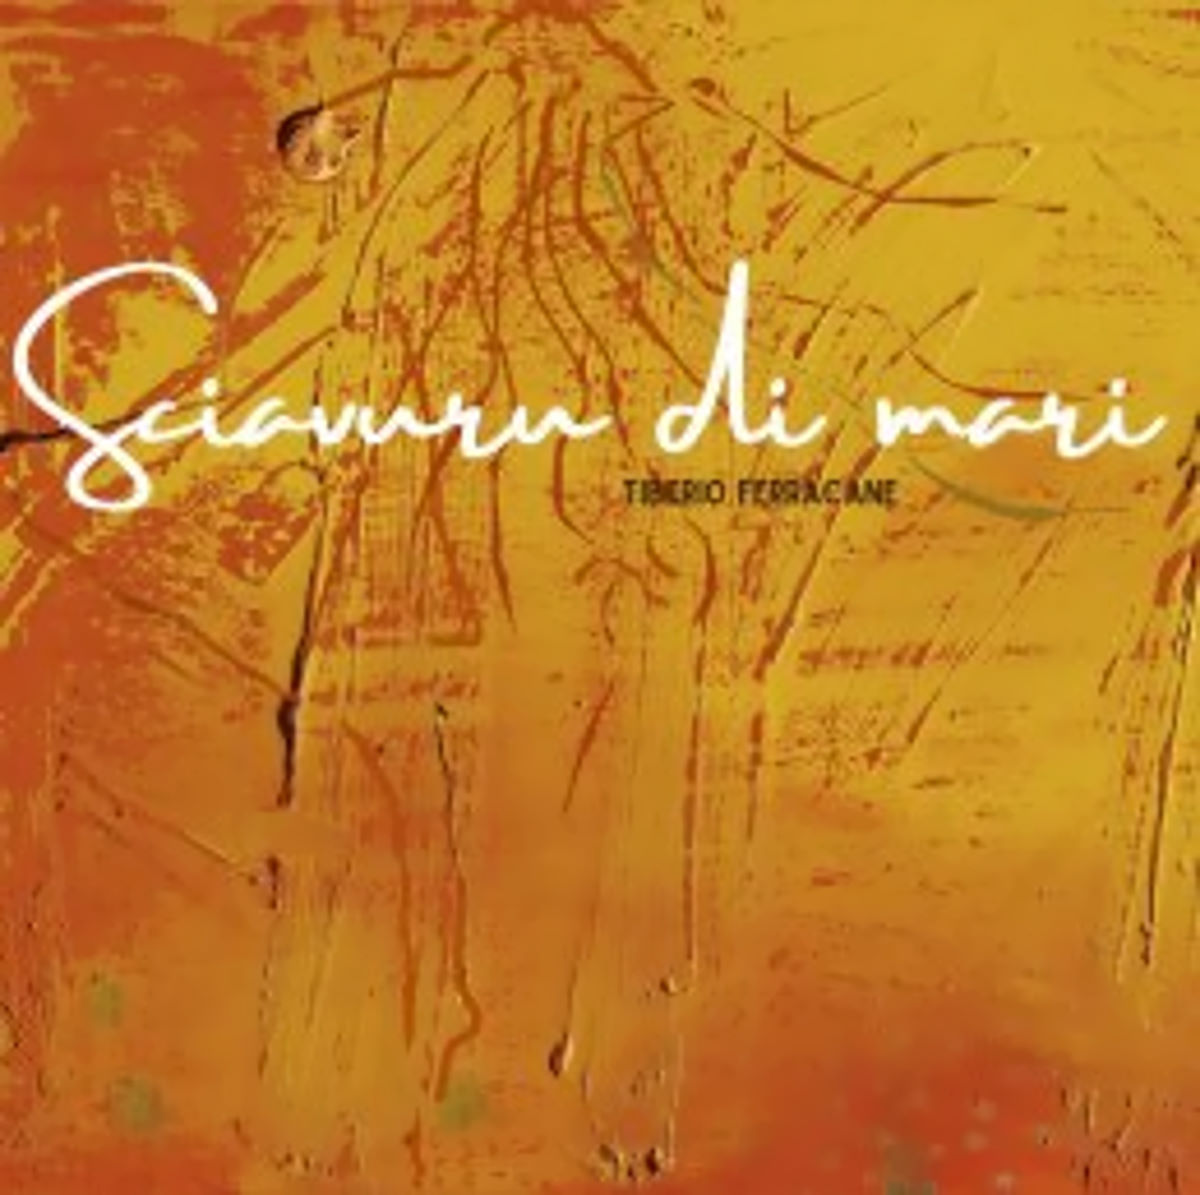 TIBERIO FERRACANE, “Sciavuru di mari” è il nuovo singolo estratto dall’album “Magaria”